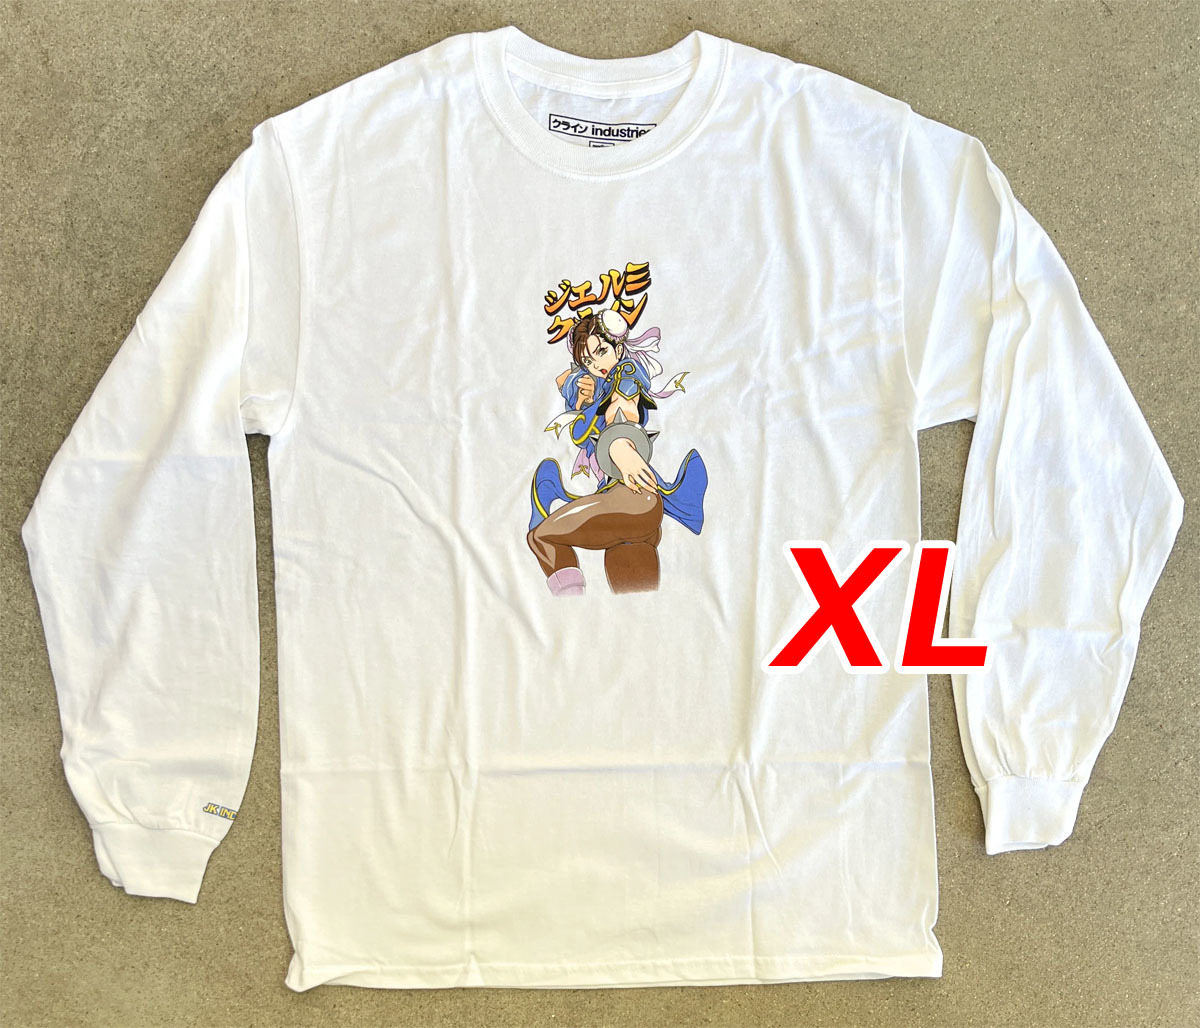 【新品・送料無料】 XL Chun li 2 LONG SLEEVE t-shirt 白 春麗 Hook-Ups ジェルミクラインindustries ロンTee長袖Tシャツ